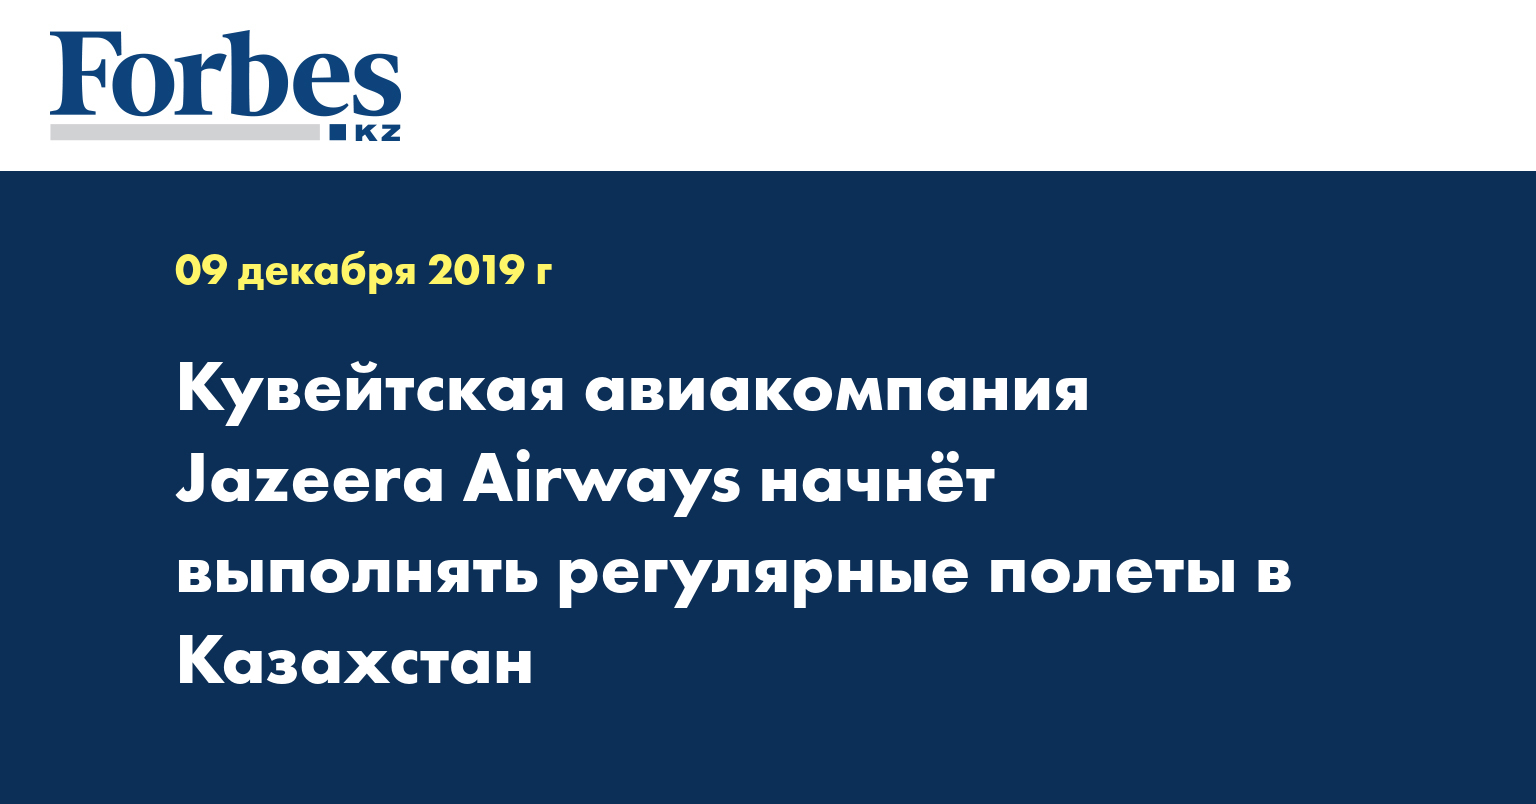 Кувейтская авиакомпания  Jazeera Airways начнет выполнять регулярные полеты в Казахстан